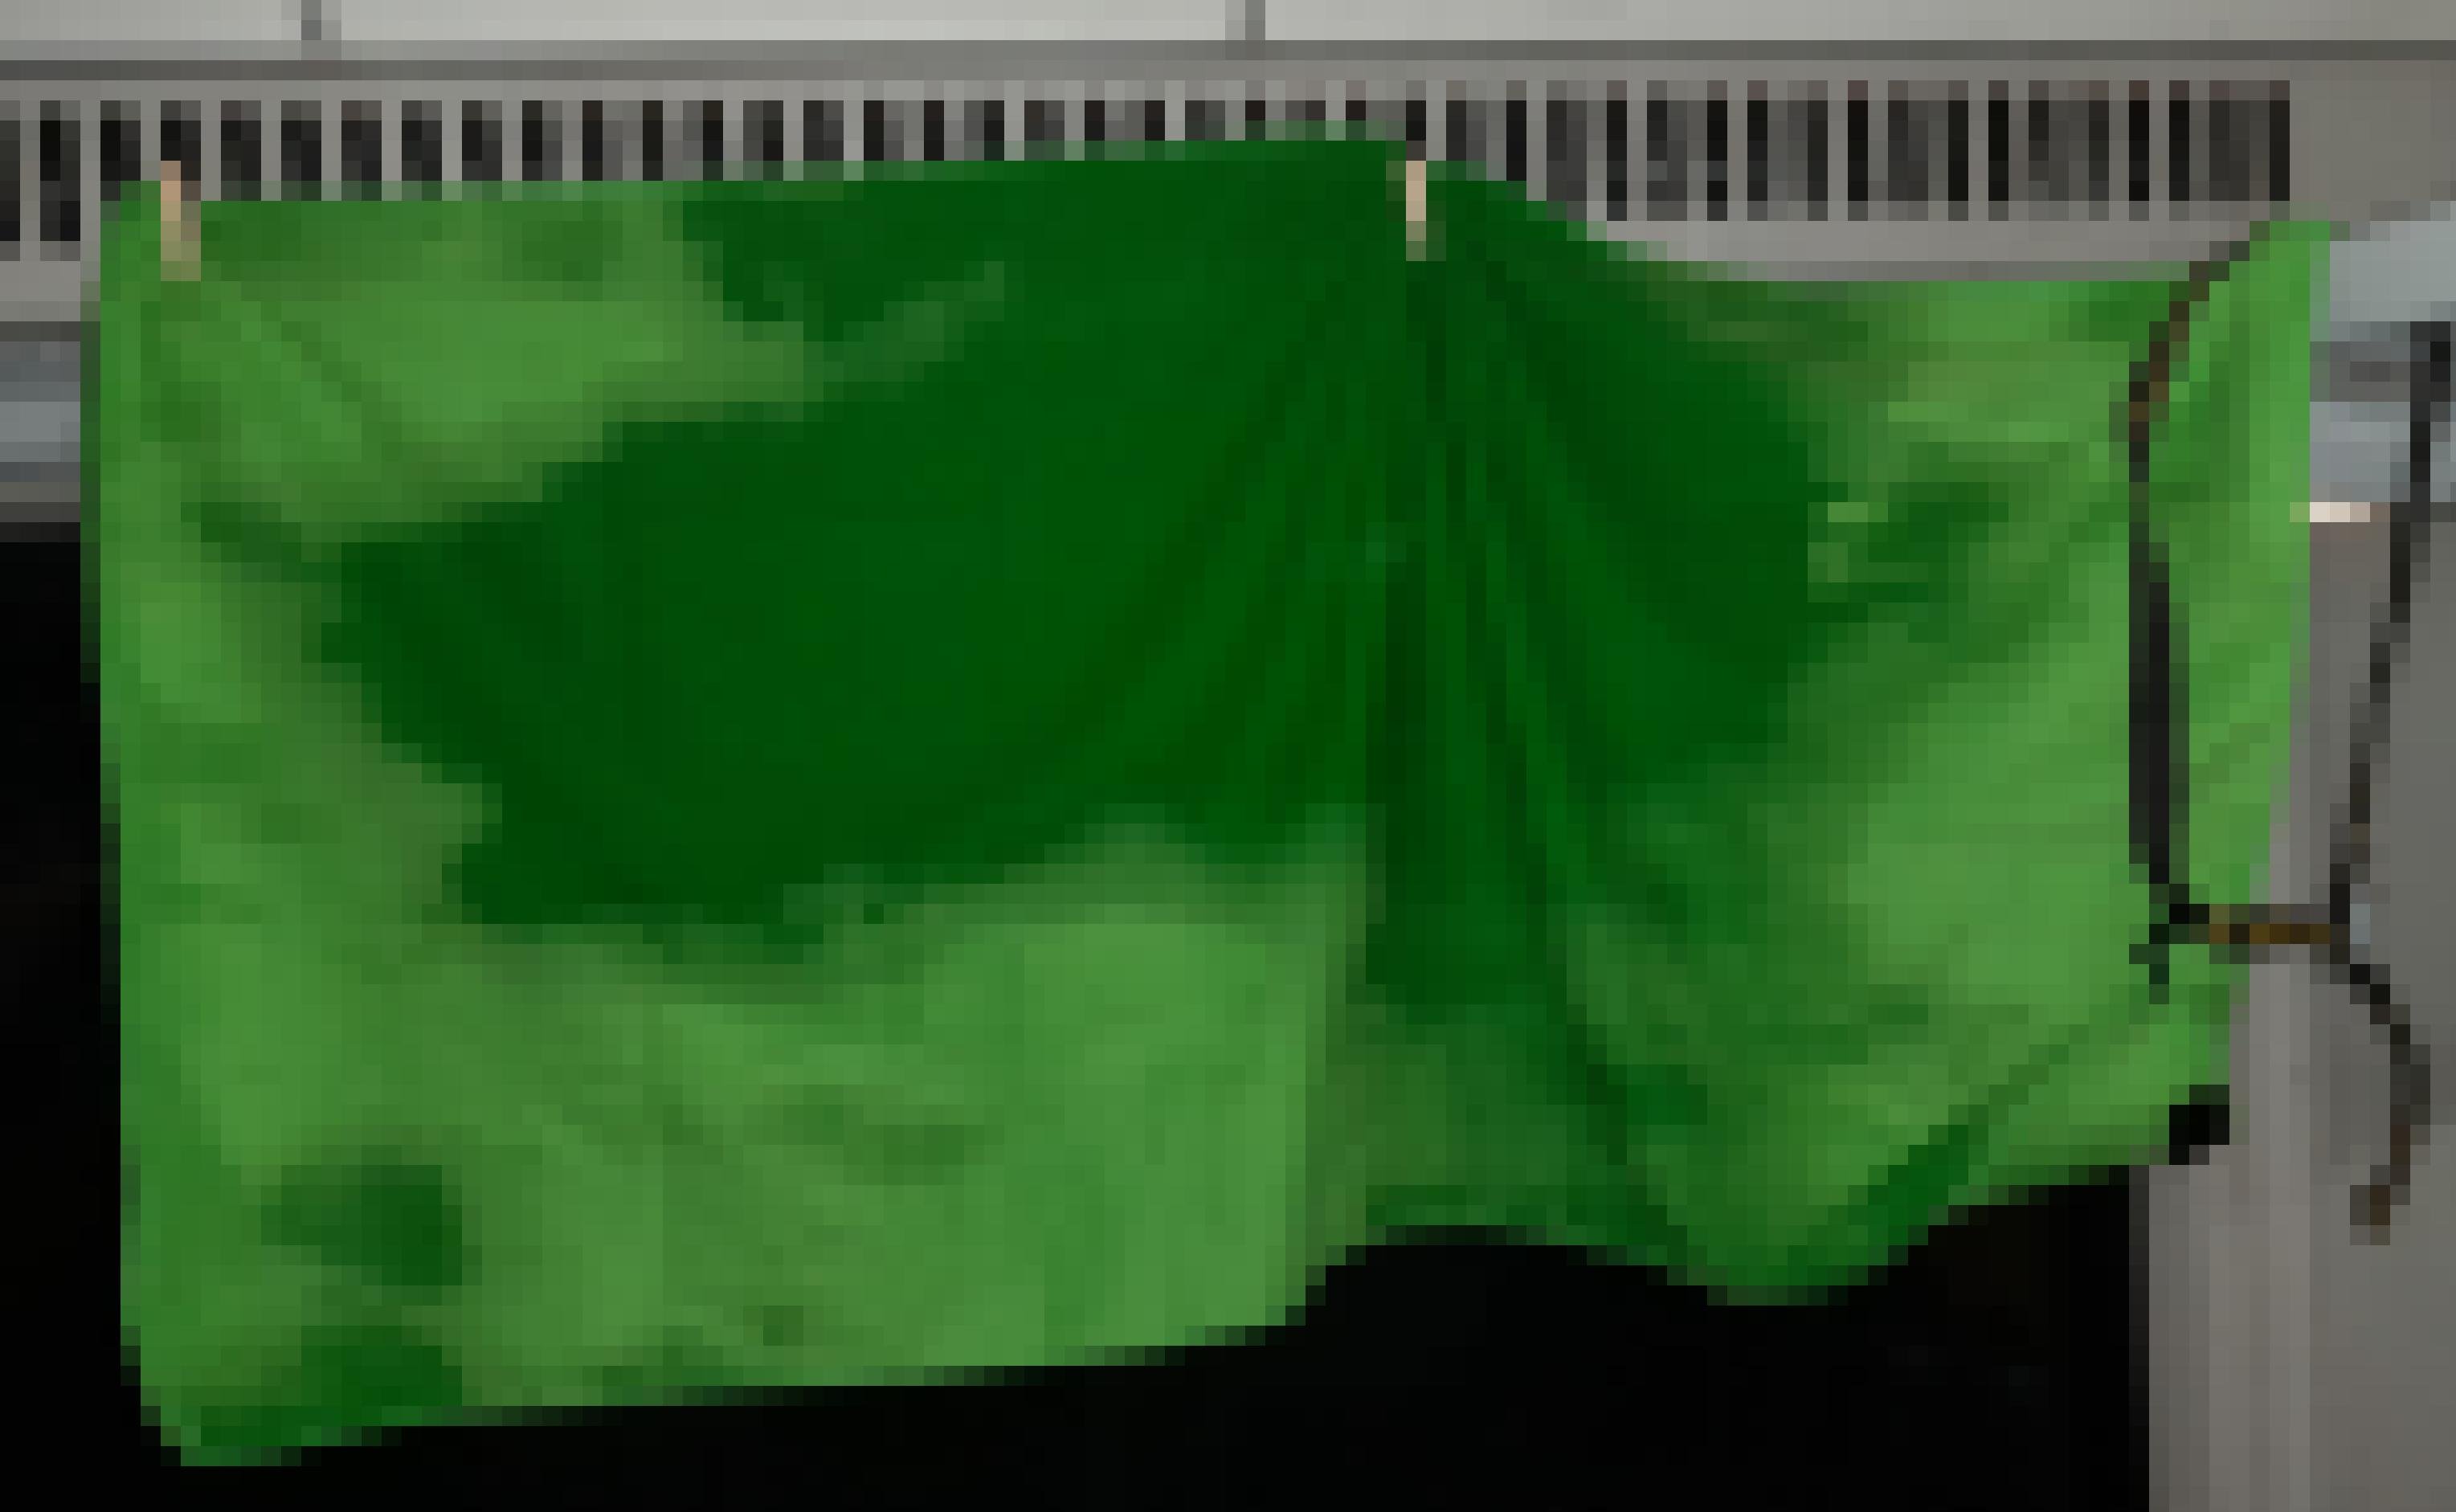 Unterhalb der das Abteilfenster krönenden Heizungsgitter hängt ein grünes Handtuch, das Wasserflecken aufweist.